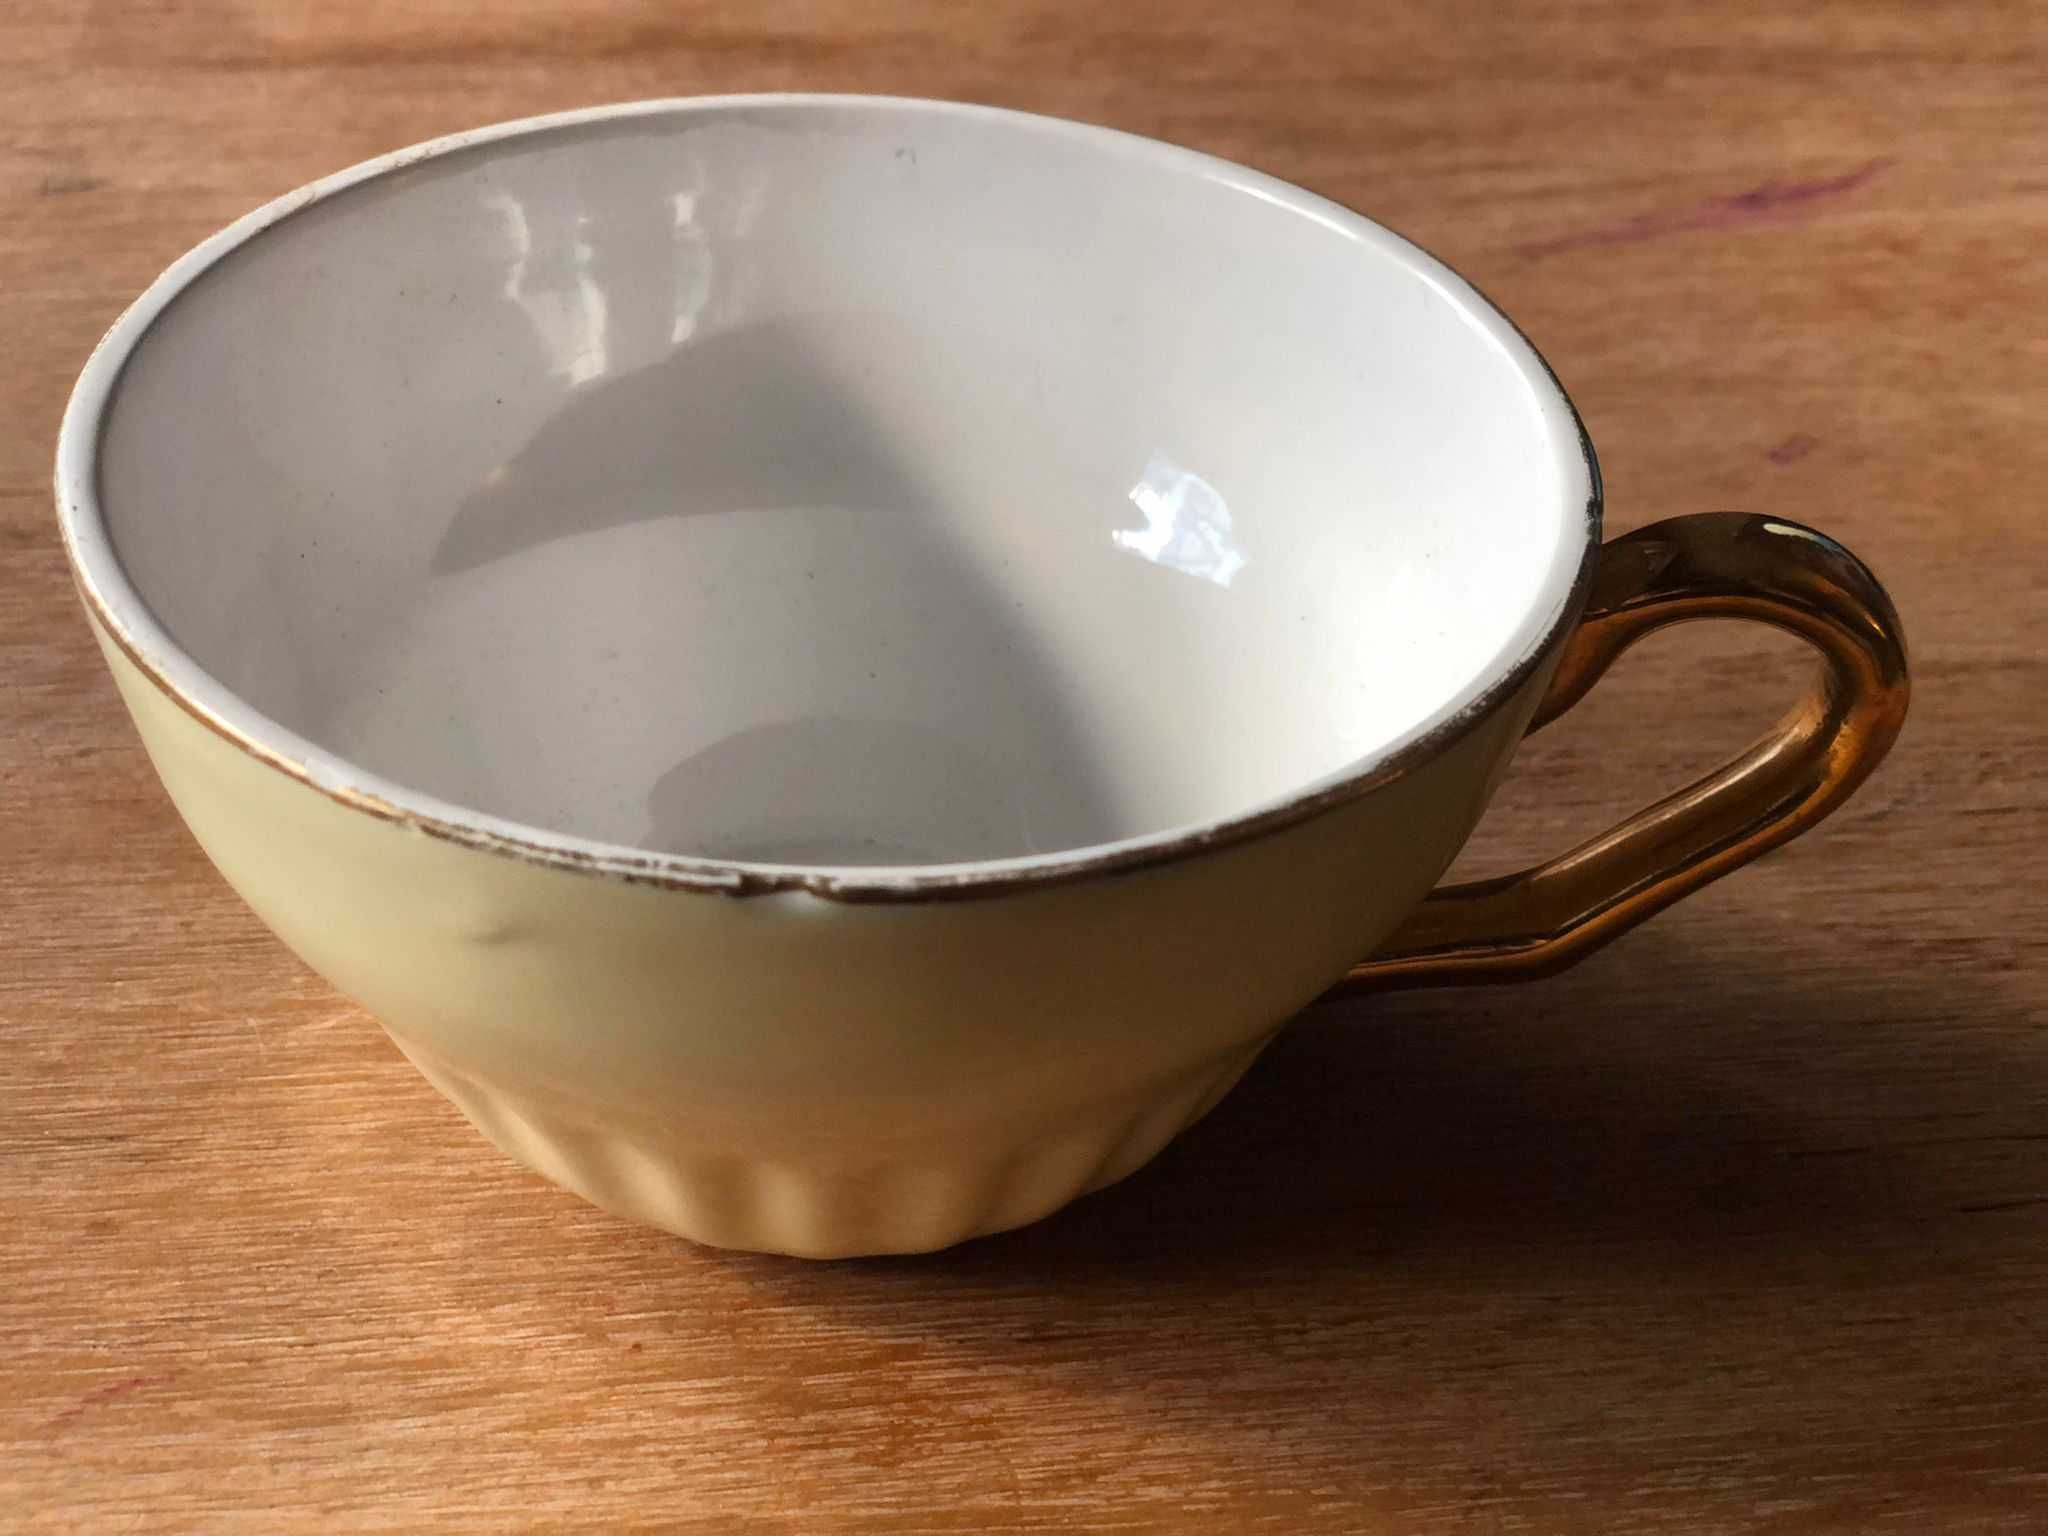 Chávena de Chá Vintage em Porcelana amarela, c/ pega e rebordo dourado